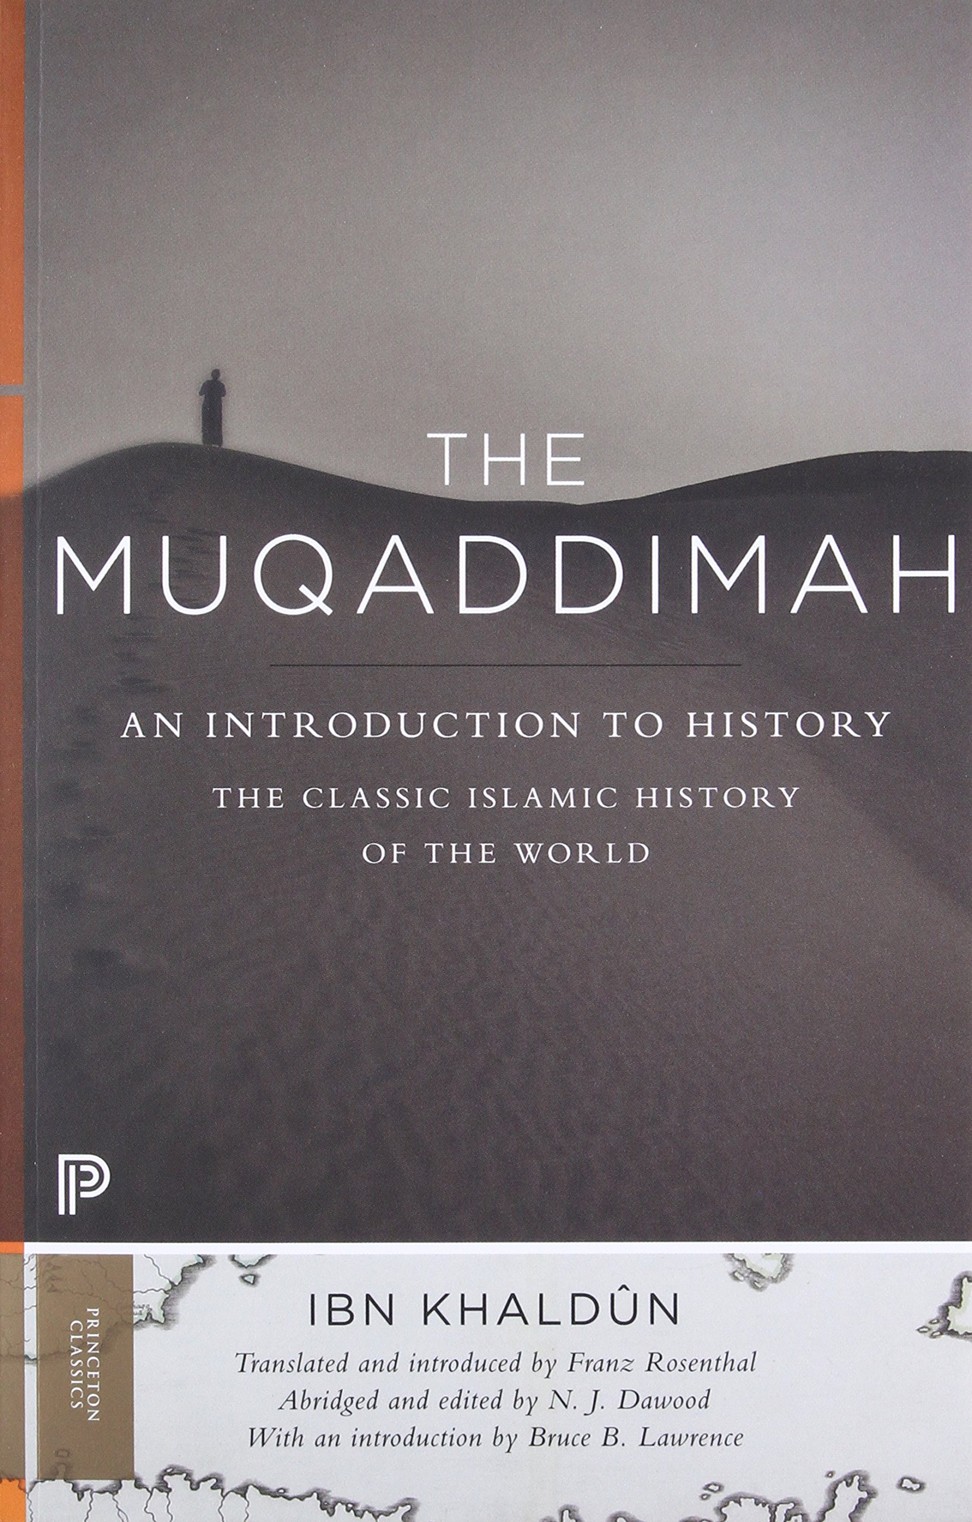 The Muqaddimah, by Ibn Khaldun.